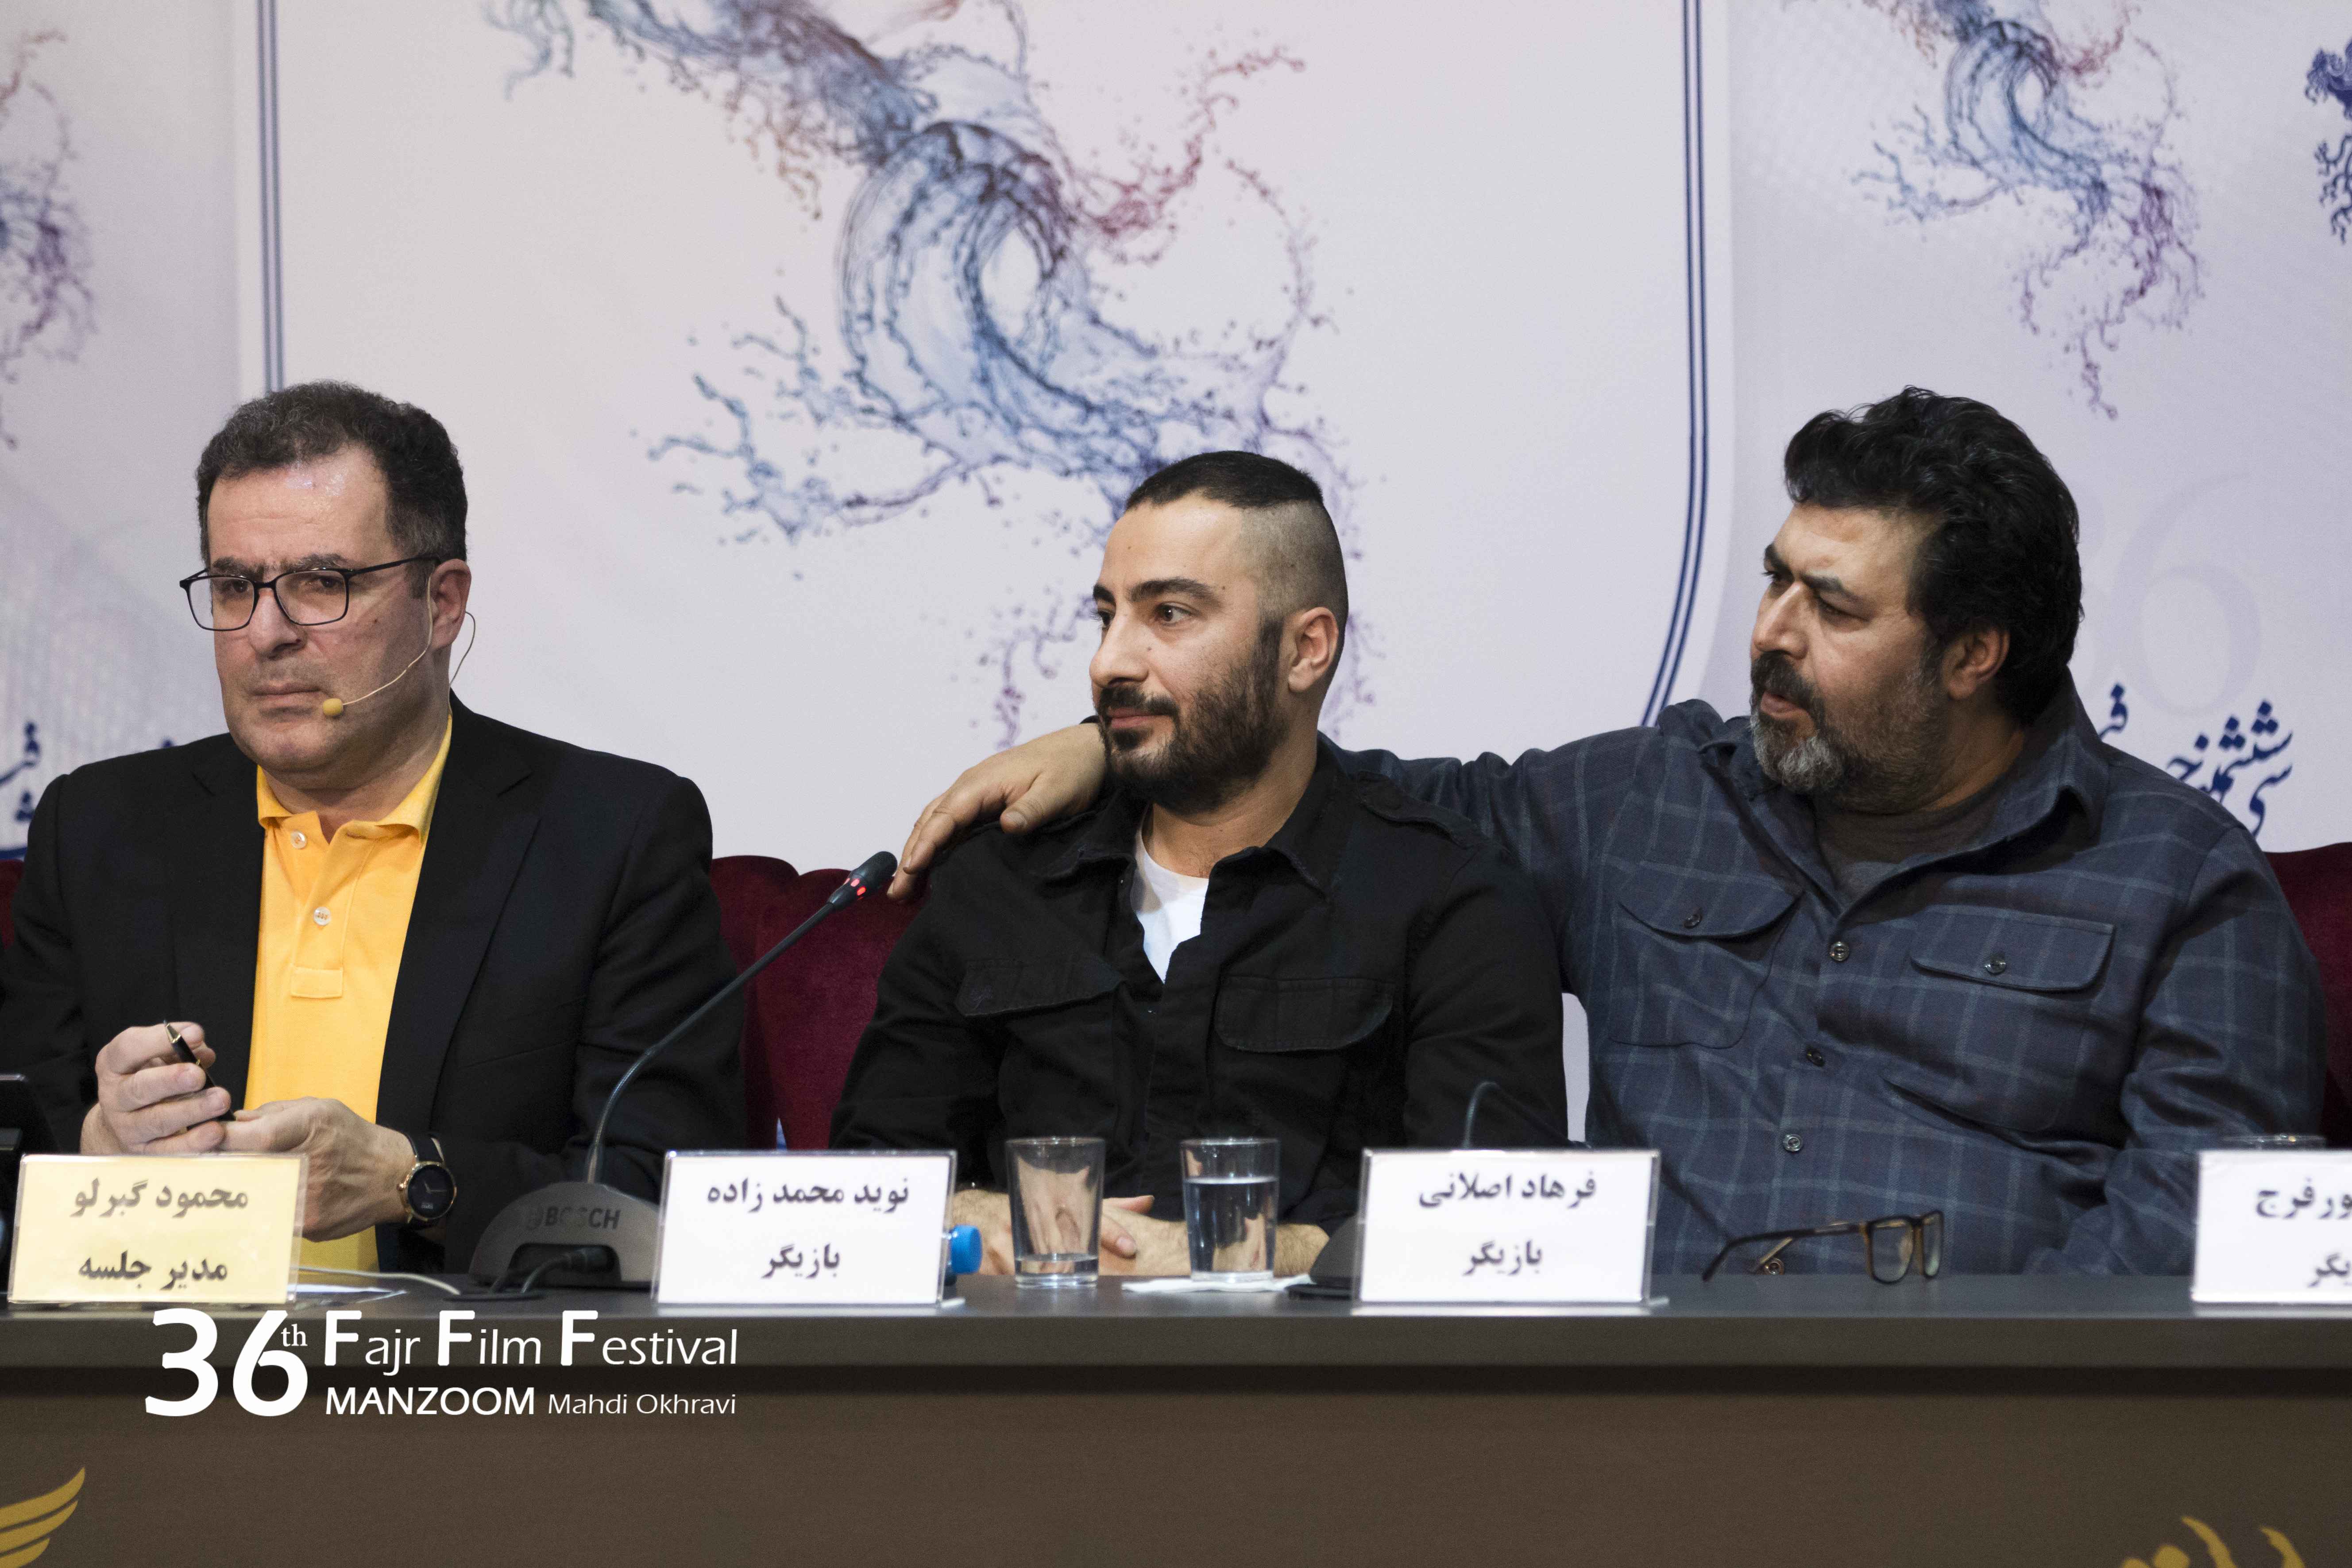 نوید محمدزاده در نشست خبری فیلم سینمایی مغزهای کوچک زنگ زده به همراه محمود گبرلو و فرهاد اصلانی